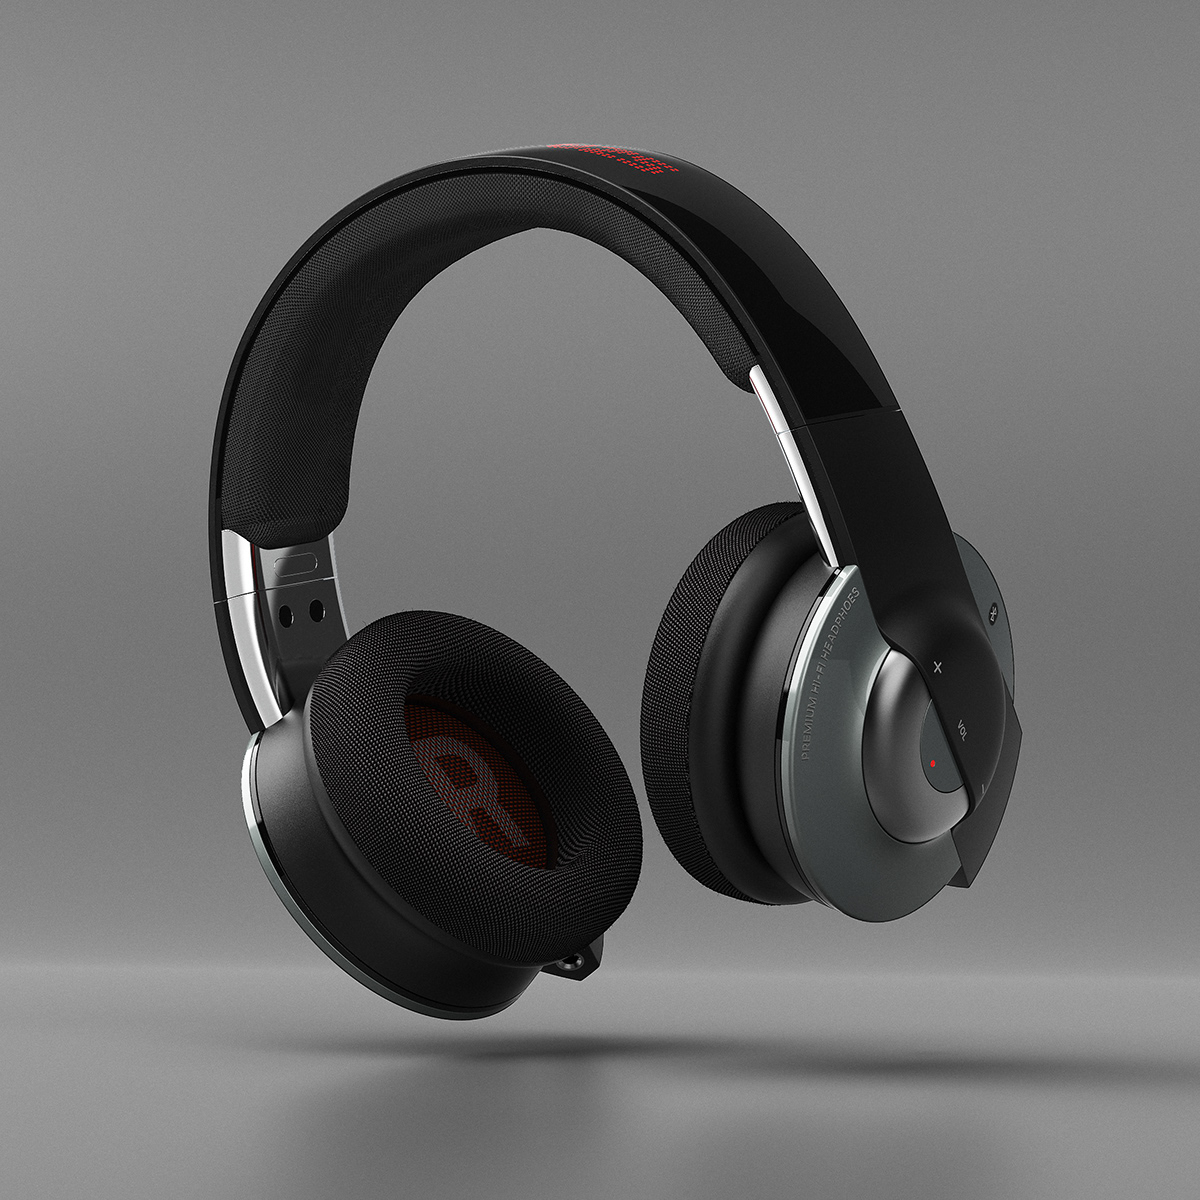 design product 3D Render headphones Audio designstudio designer product design  industrial design 